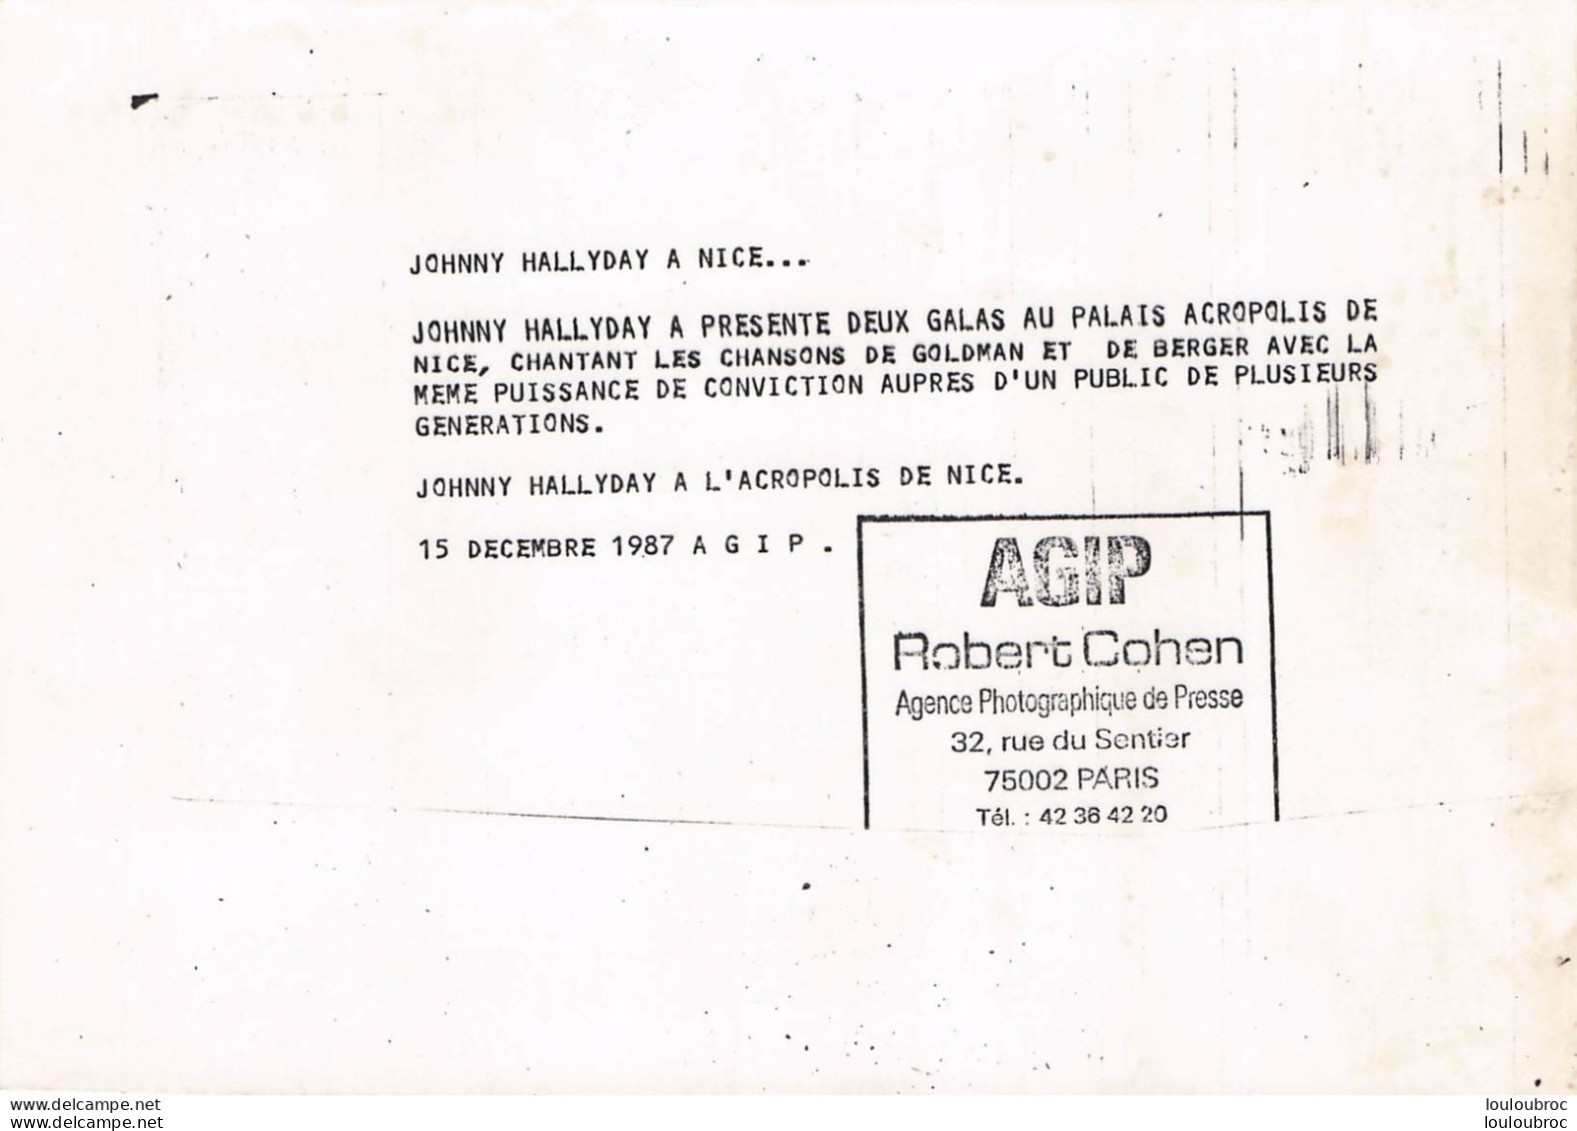 JOHNNY HALLYDAY 1987 A L'ACROPOLIS DE NICE CHANTANT GOLDMAN ET BERGER  PHOTO DE PRESSE ORIGINALE 21X15CM - Personalidades Famosas